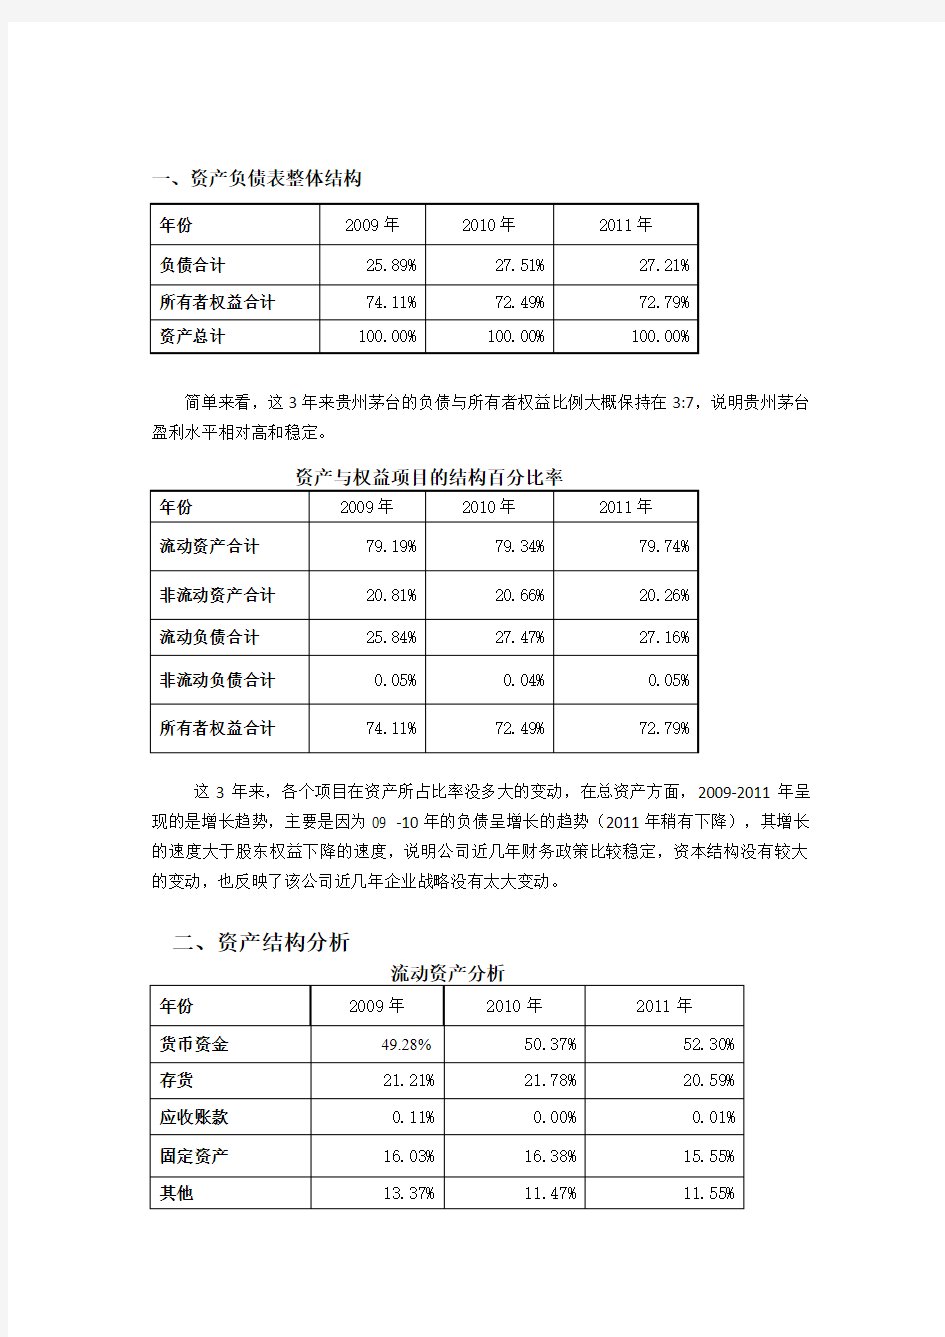 贵州茅台资产负债表与利润表分析